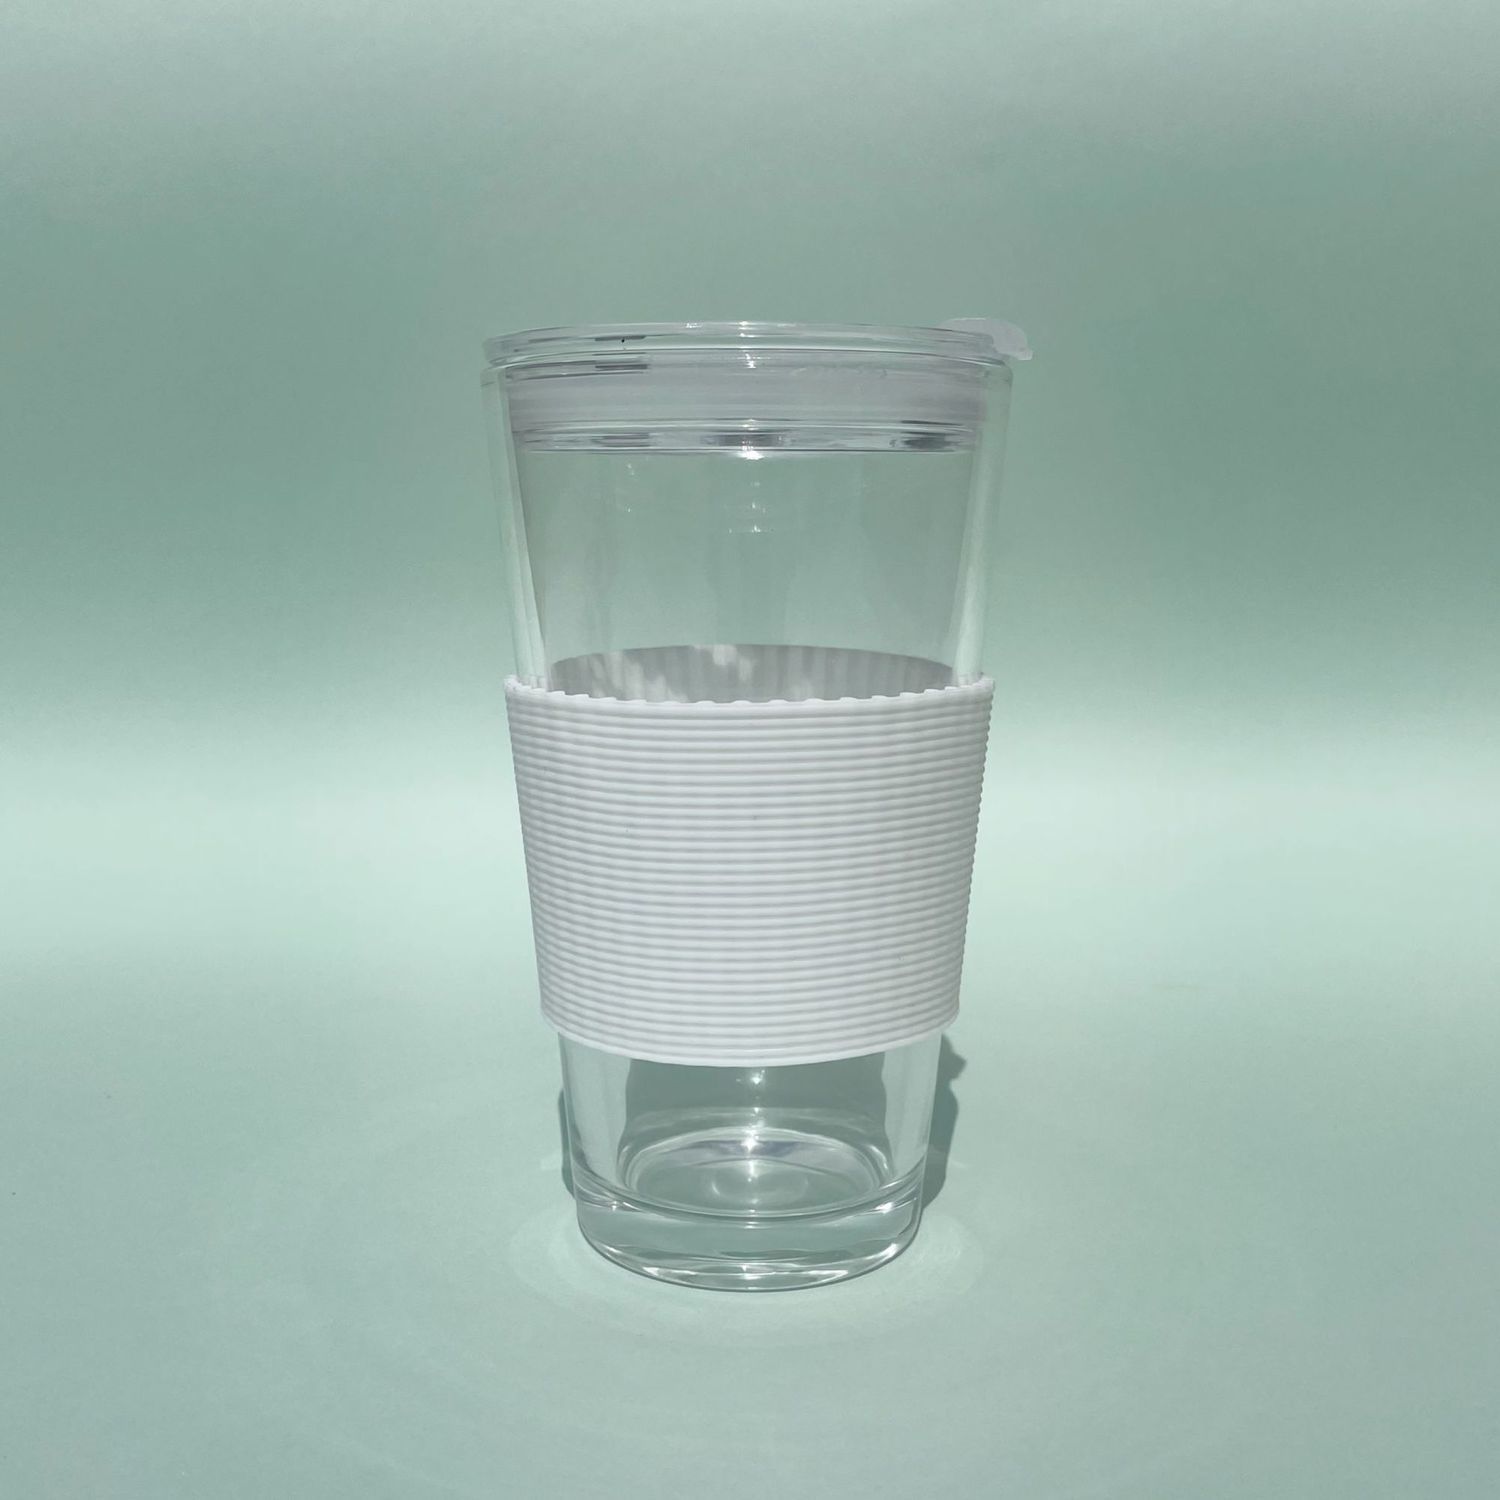 硅胶杯套玻璃杯隔热套防滑防烫水杯圈保护套锥形加厚耐热茶杯套